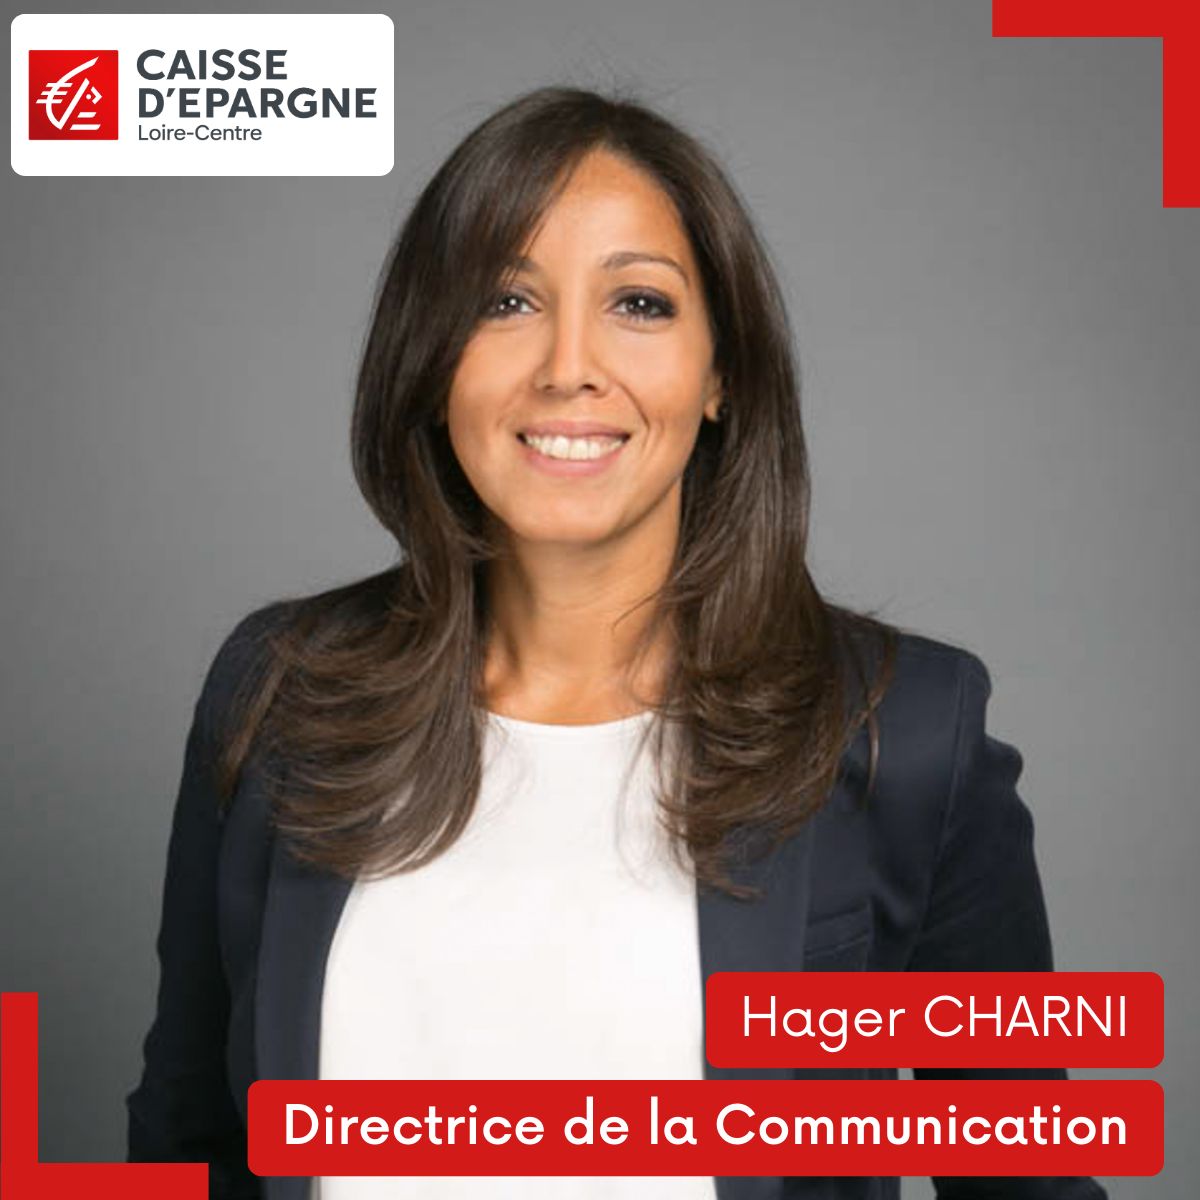 Hager CHARNI, nouvelle Directrice de communication de la Caisse d’Epargne Loire Centre